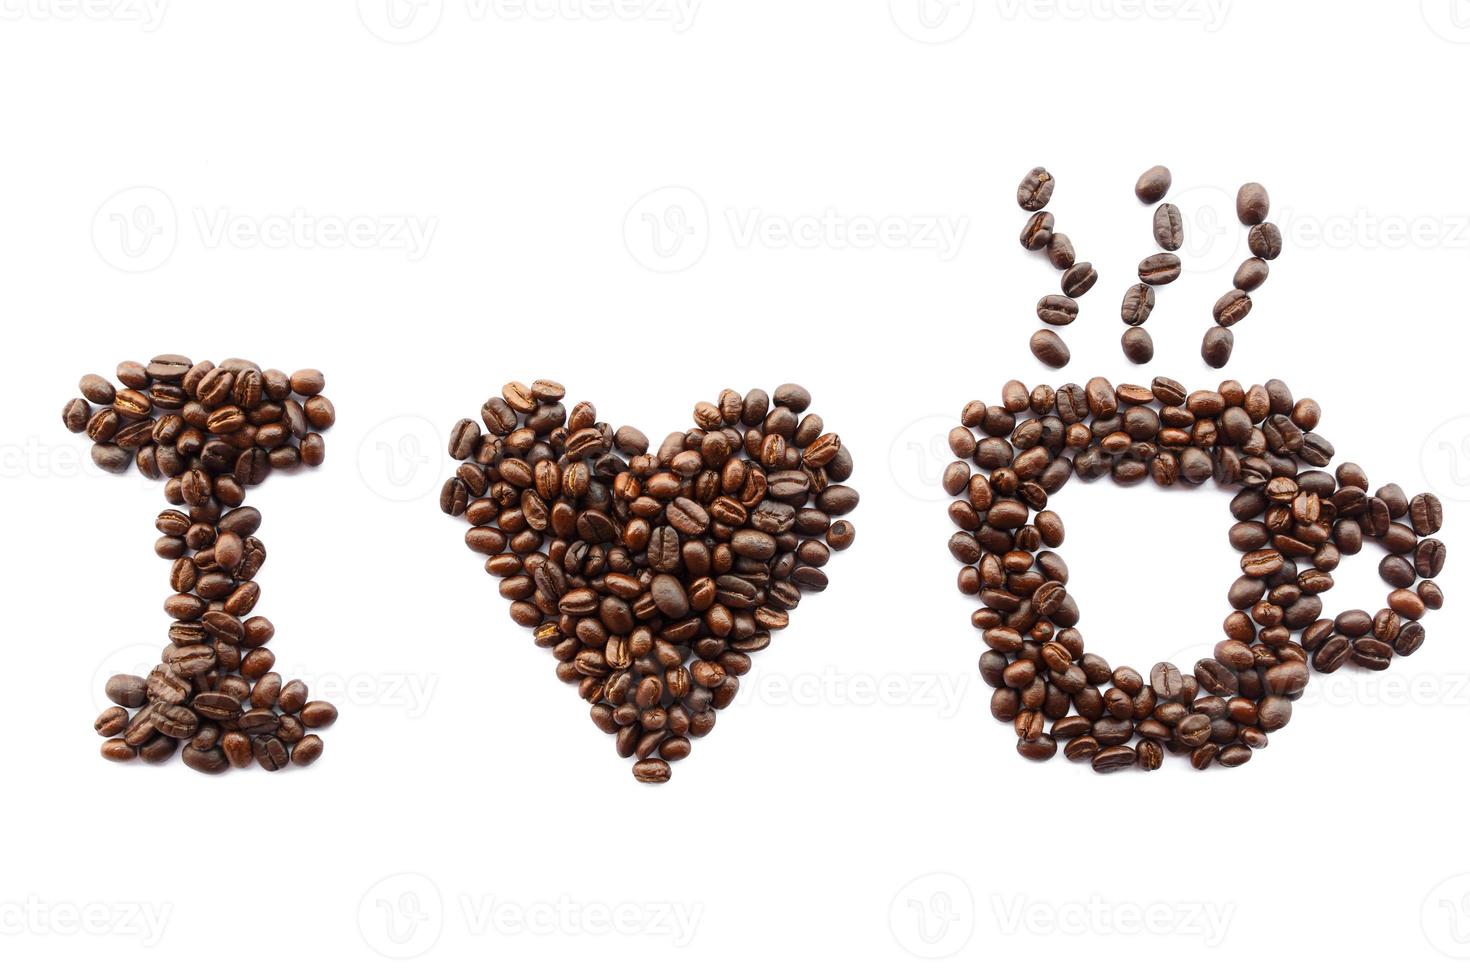 eu amo grãos de café de café em forma de massagem no fundo branco isolado foto